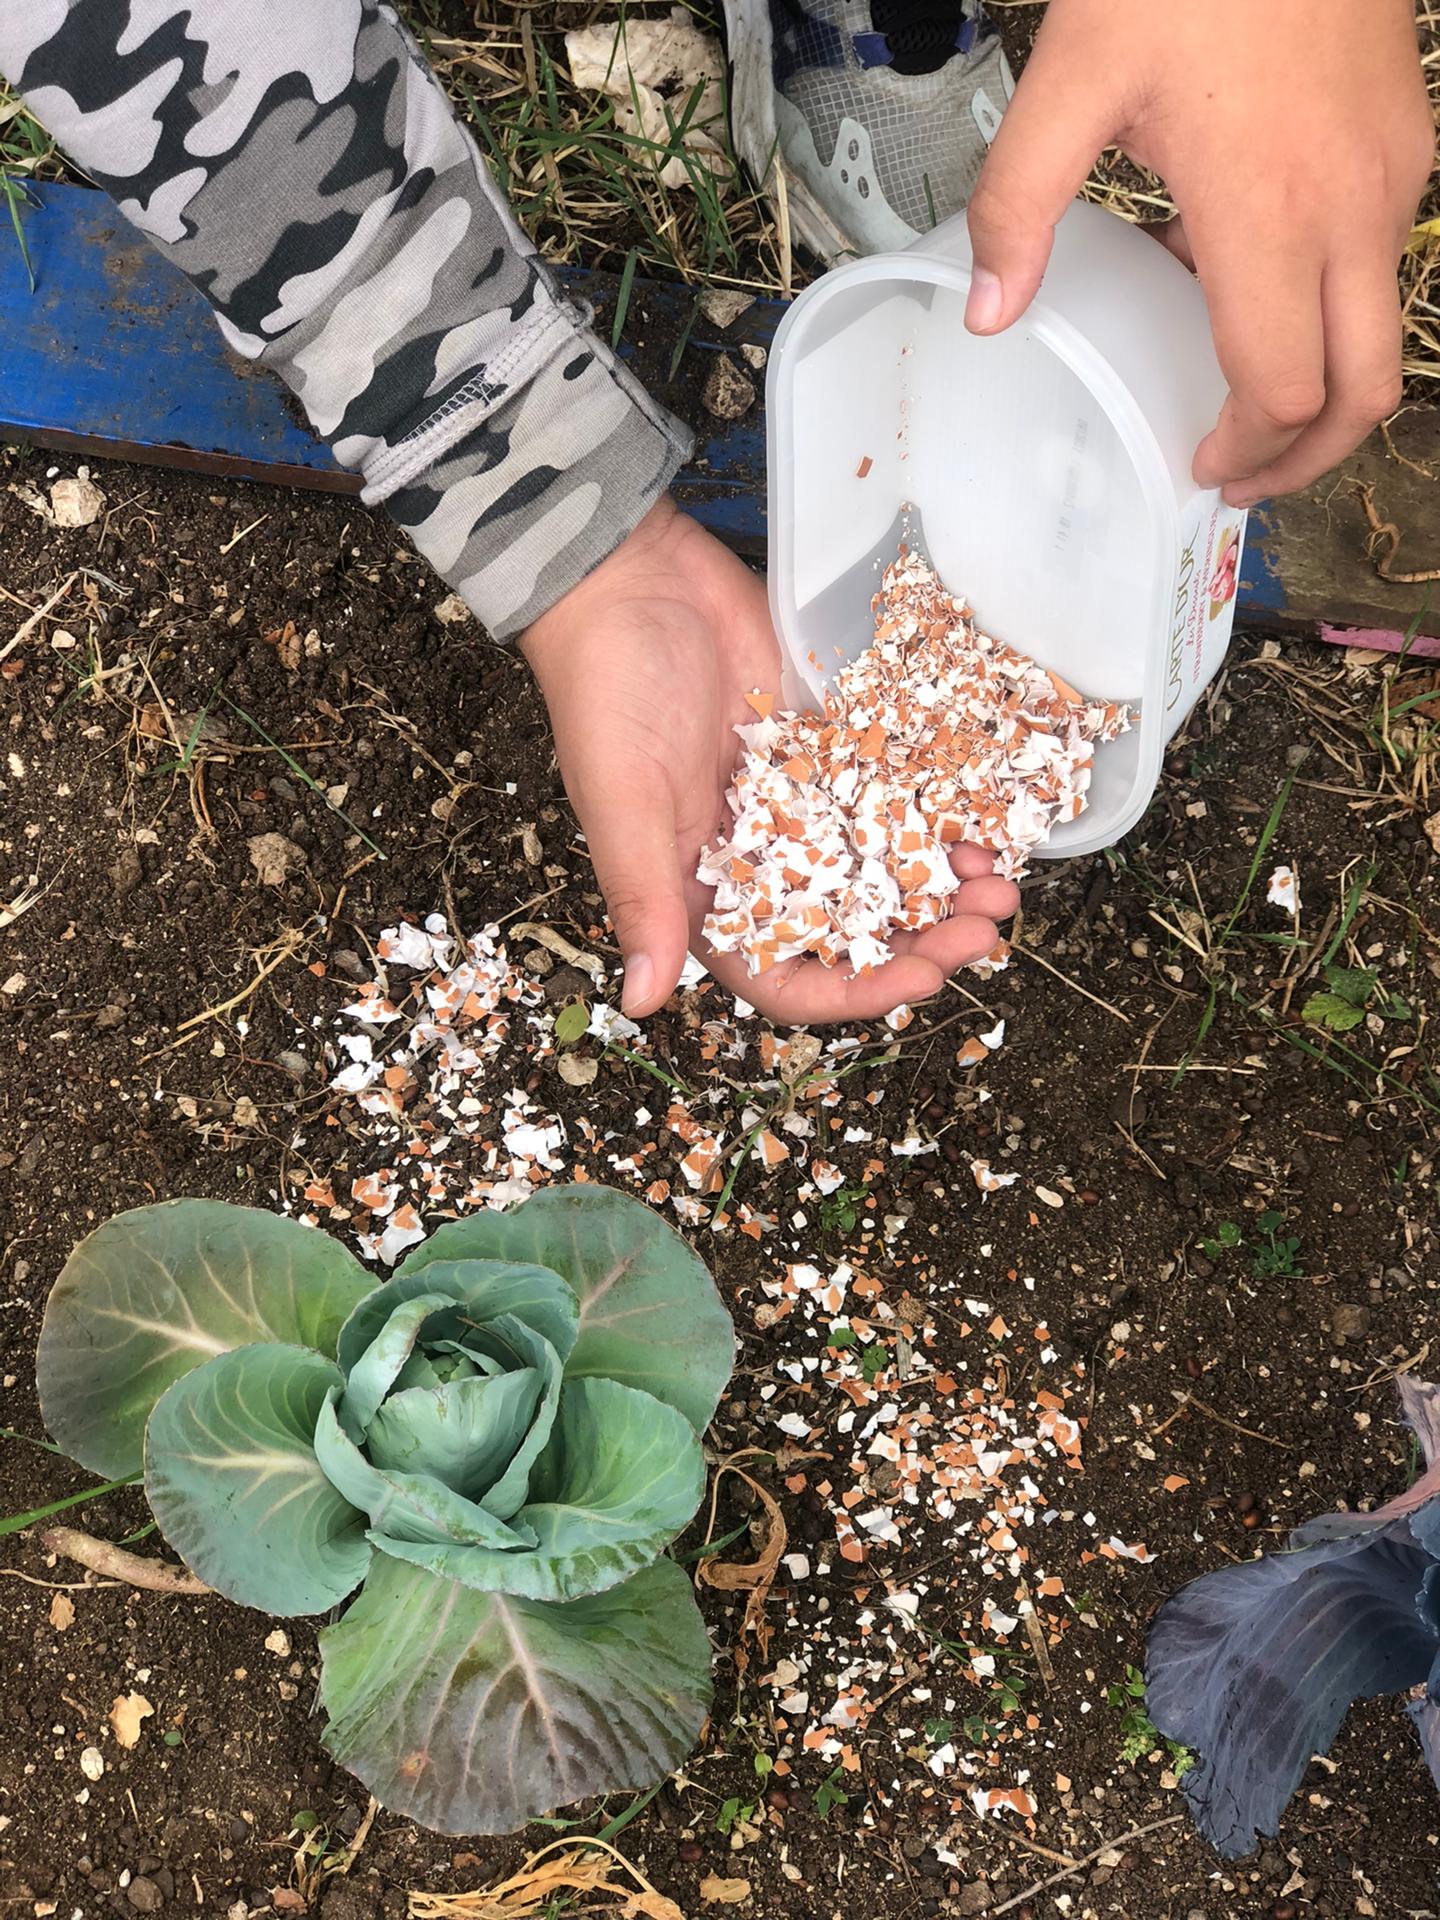 Colocámos as cascas de ovos trituradas em volta das plantas da nossa horta, de forma a lhes fornecer nutrientes essenciais e a afastar algumas pragas